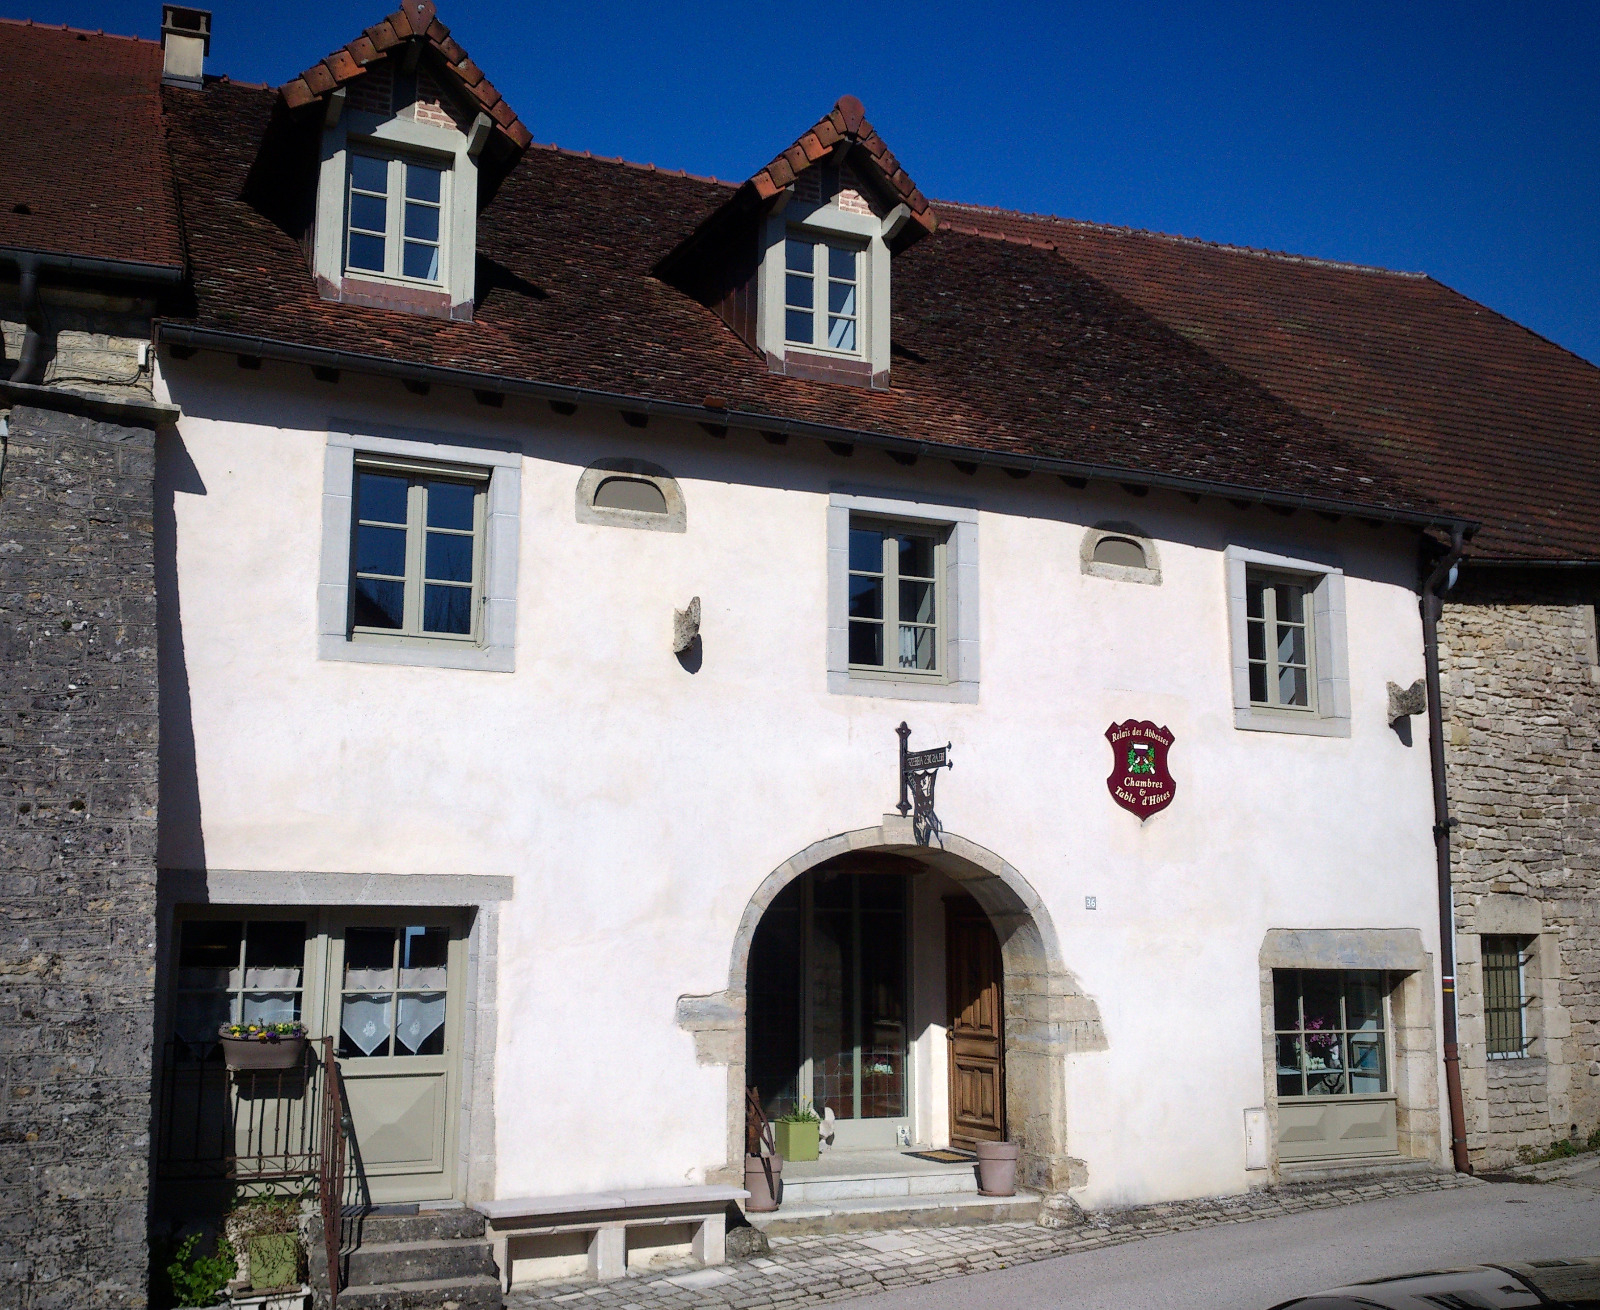 Château-Chalon En Exclusivité (39-Jura-Lons-Le-Saunier tout Chambre D Hote Chateau Chalon